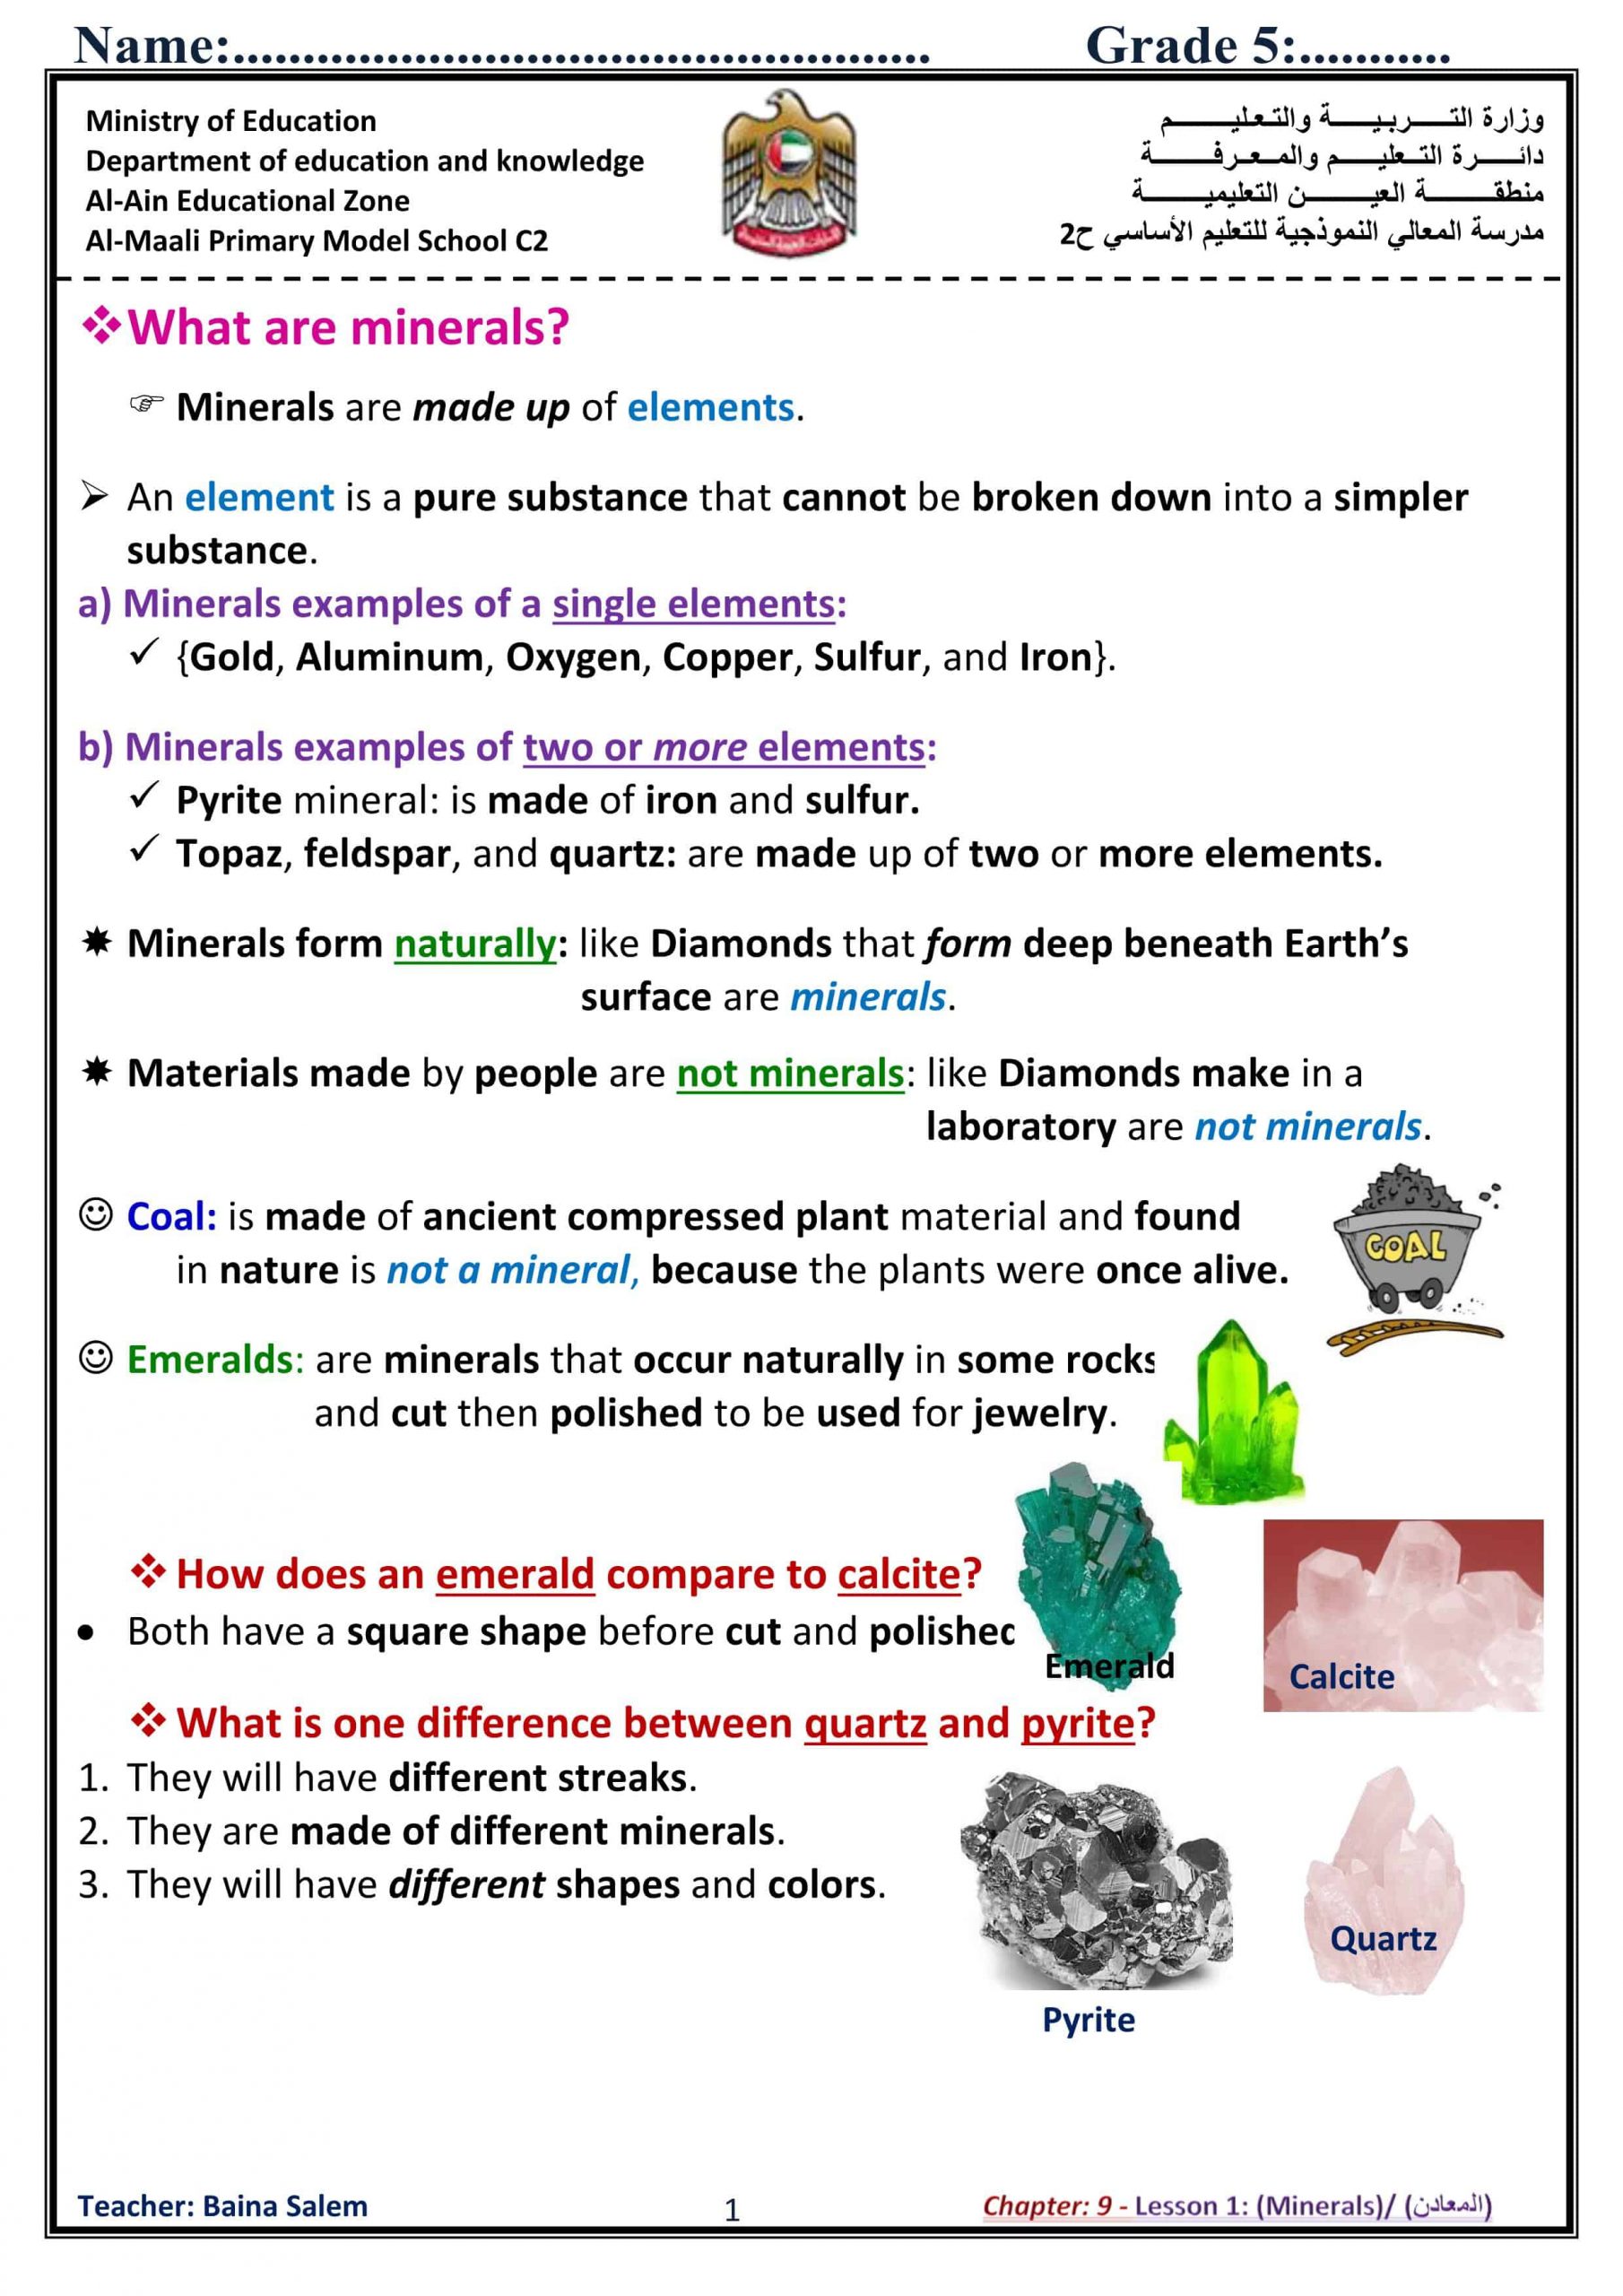 ملخص درس minerals بالإنجليزي الصف الخامس مادة العلوم المتكاملة